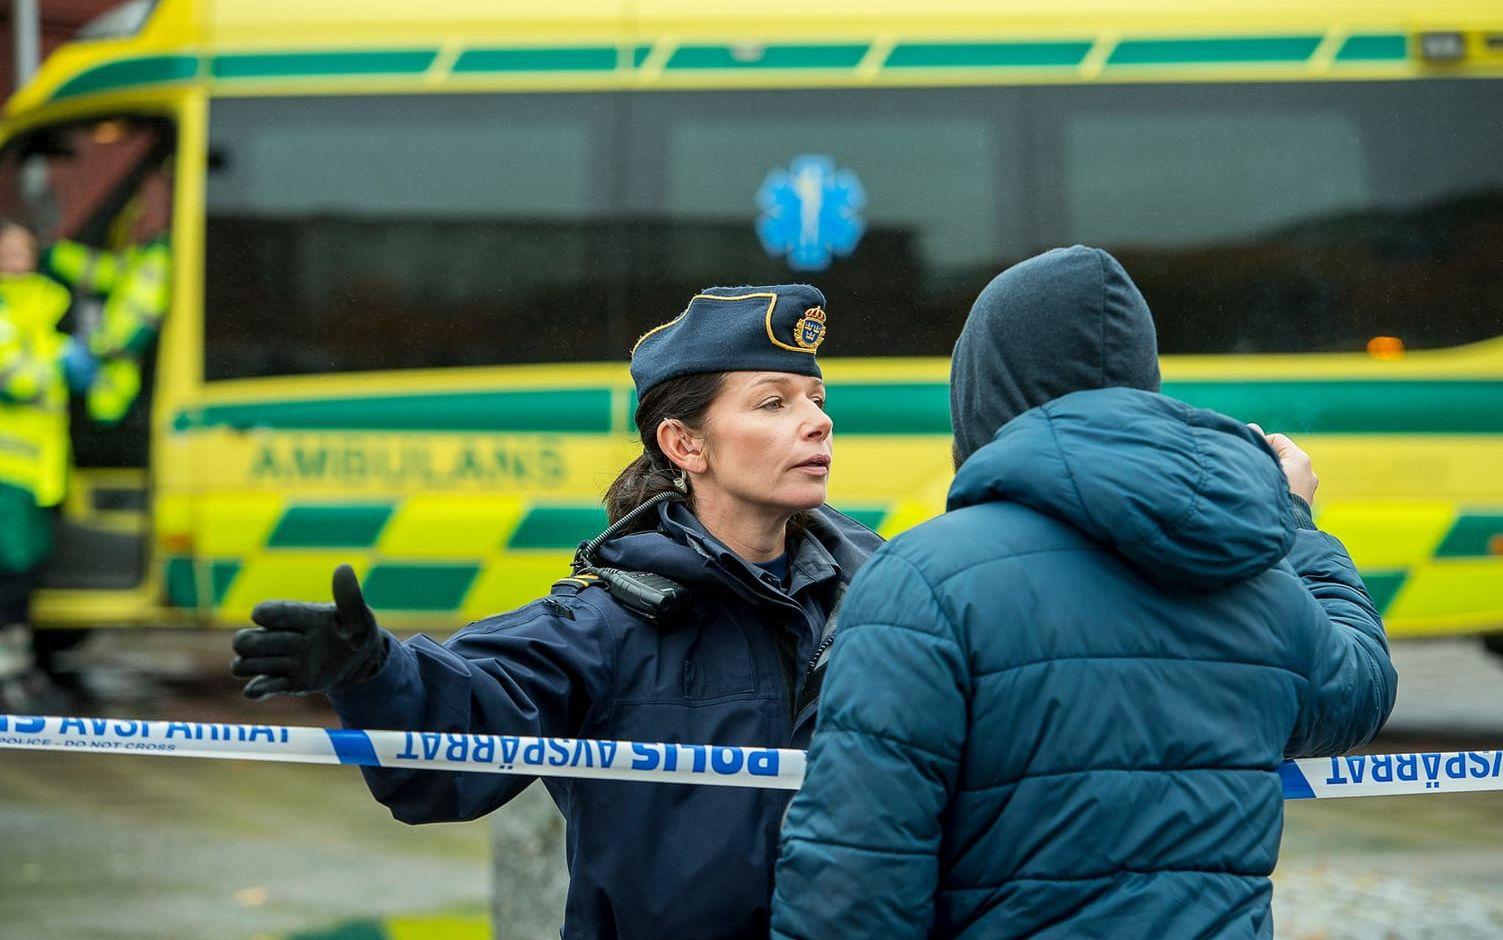 Marie Kide från Trollhättan föll offer för terrordådet i Stockholm. Men innan hade hon också överlevt skolattacken på Kronans skola.